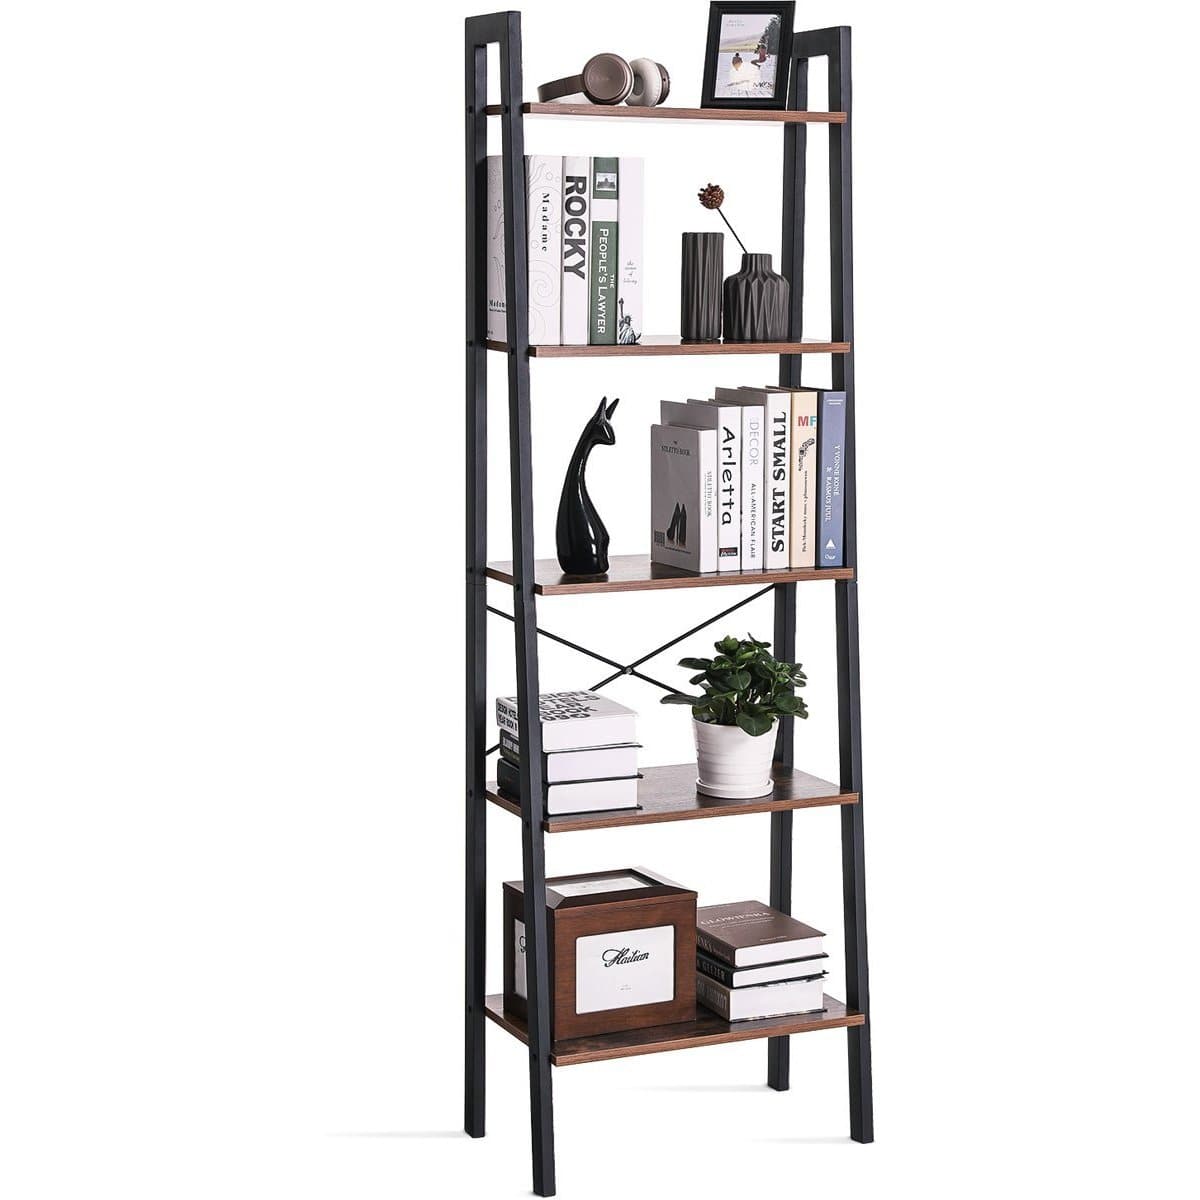 Nancy's Renton Boekenkast Industrieel - Boekenstandaard - Ladderkast 5 Laags 56 x 34 x 172 cm